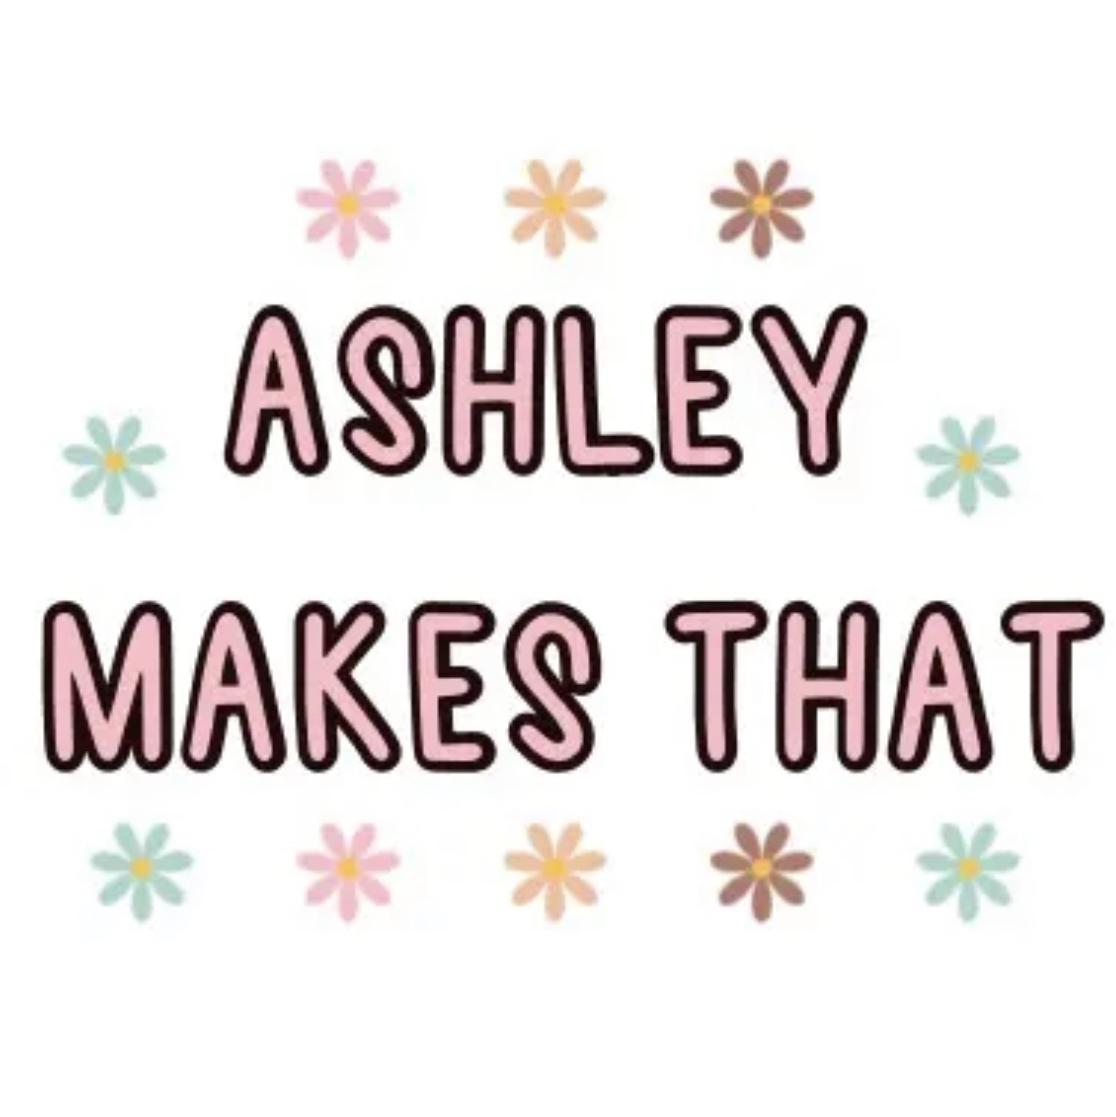 AshleyMakesThat